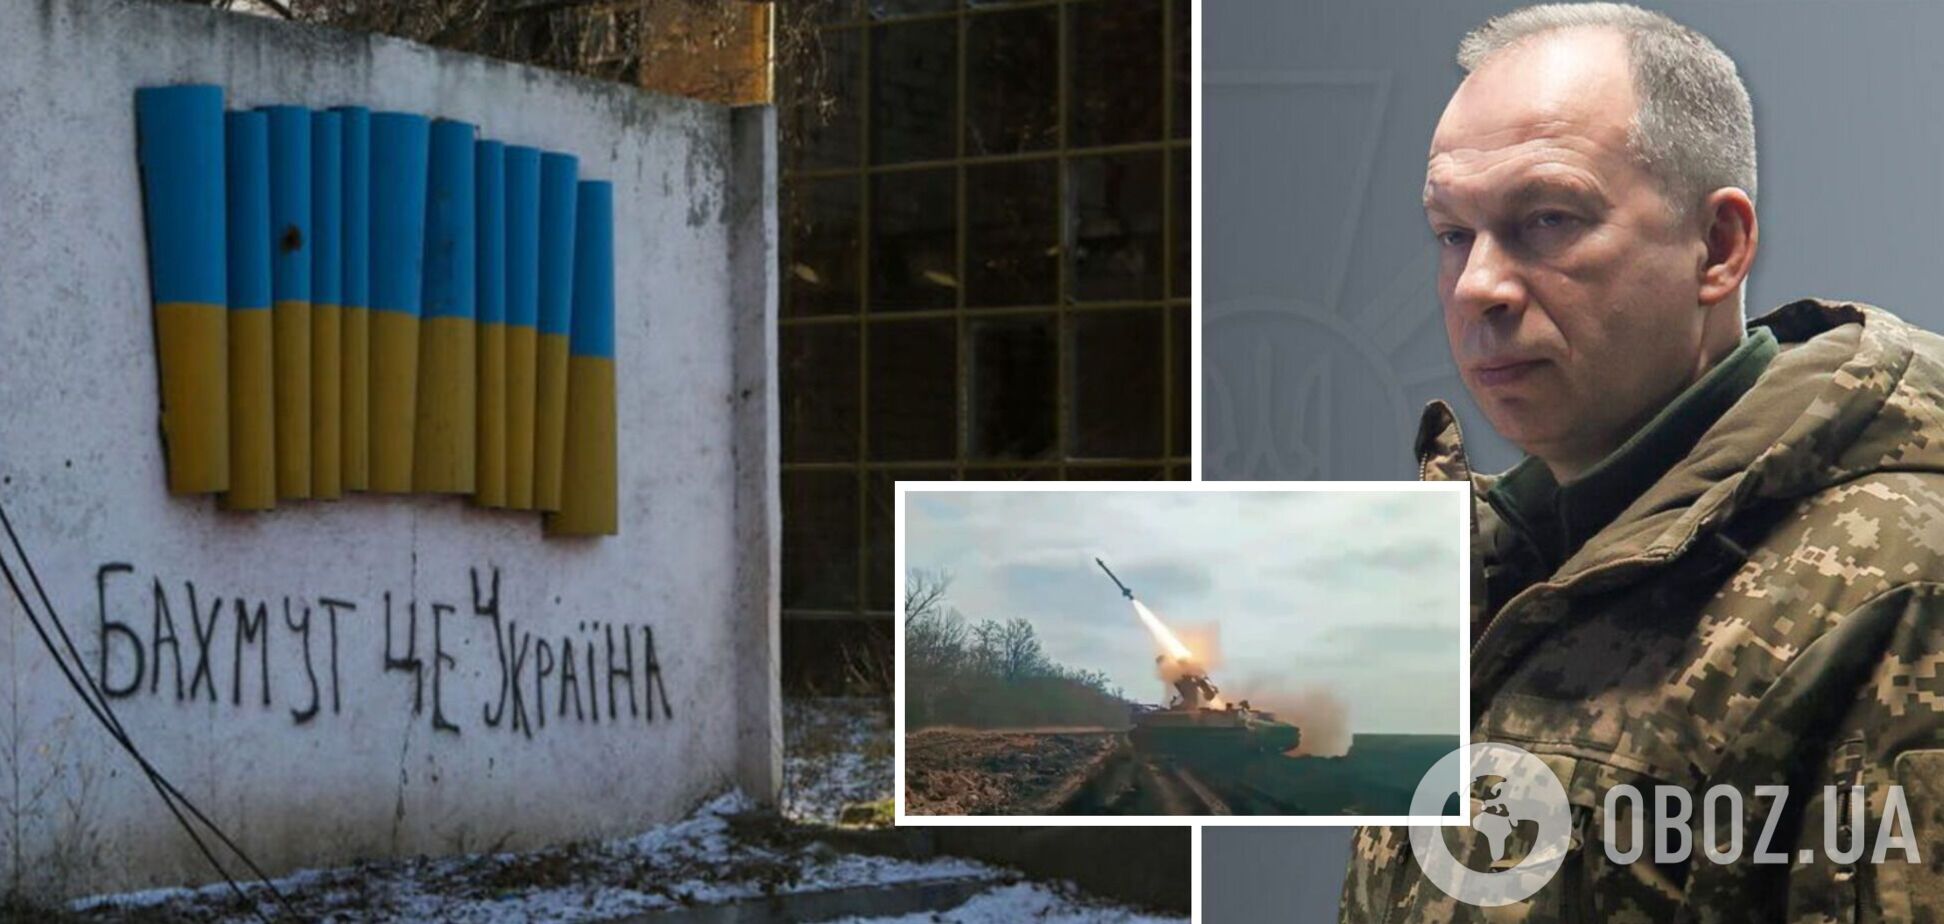 РФ намагається прикрити свої провали новими фейками про взяття Бахмута: Сирський про ситуацію на Донбасі. Фото